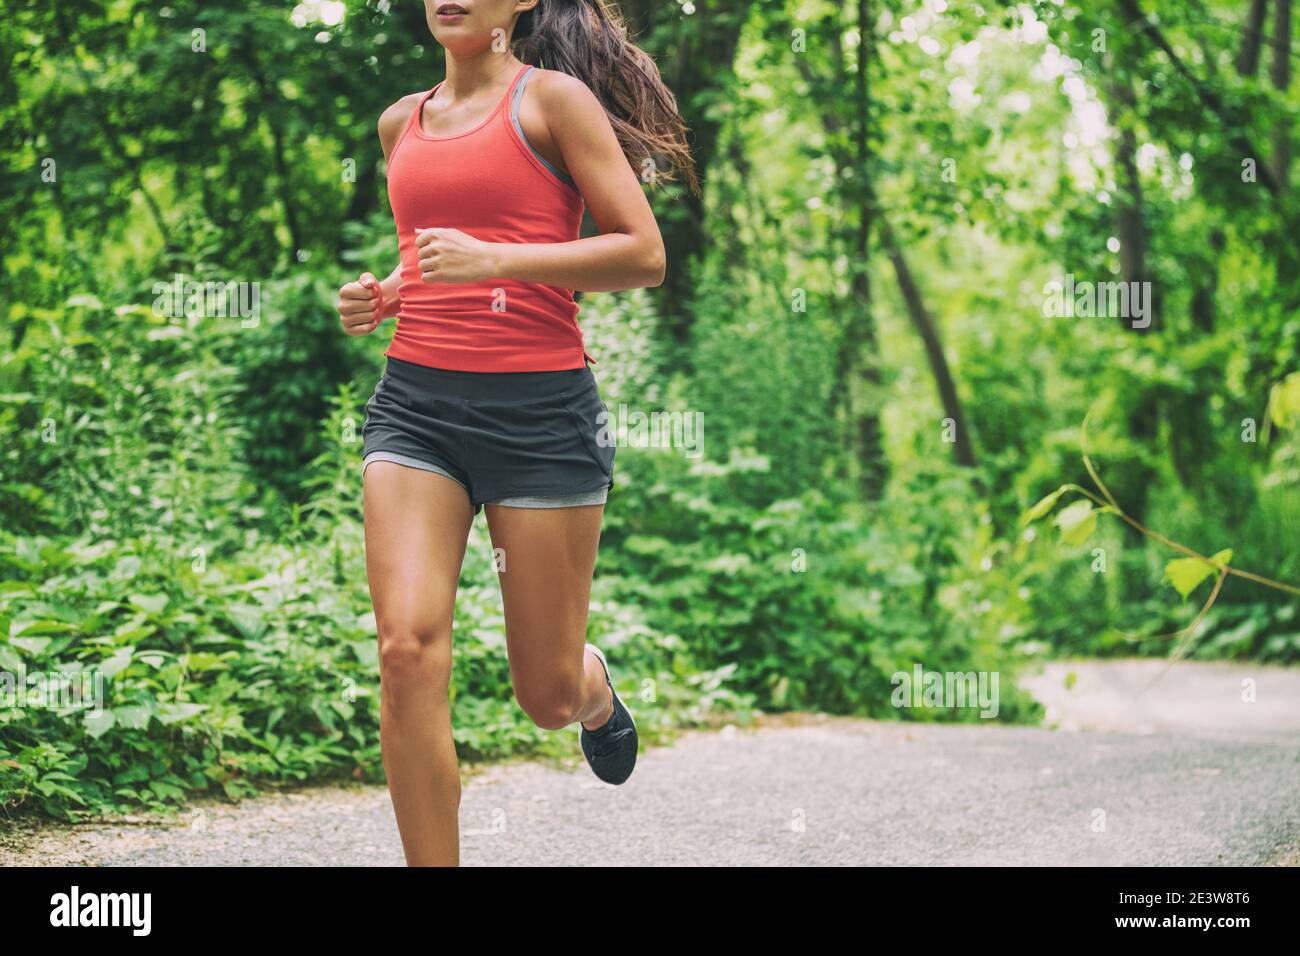 Frau Läuferin auf Stadt laufen Marathon Rennen Laufen Joggen im Freien im Sommer aktiven Sport Lebensstil. Gesundes Leben. Stockfoto